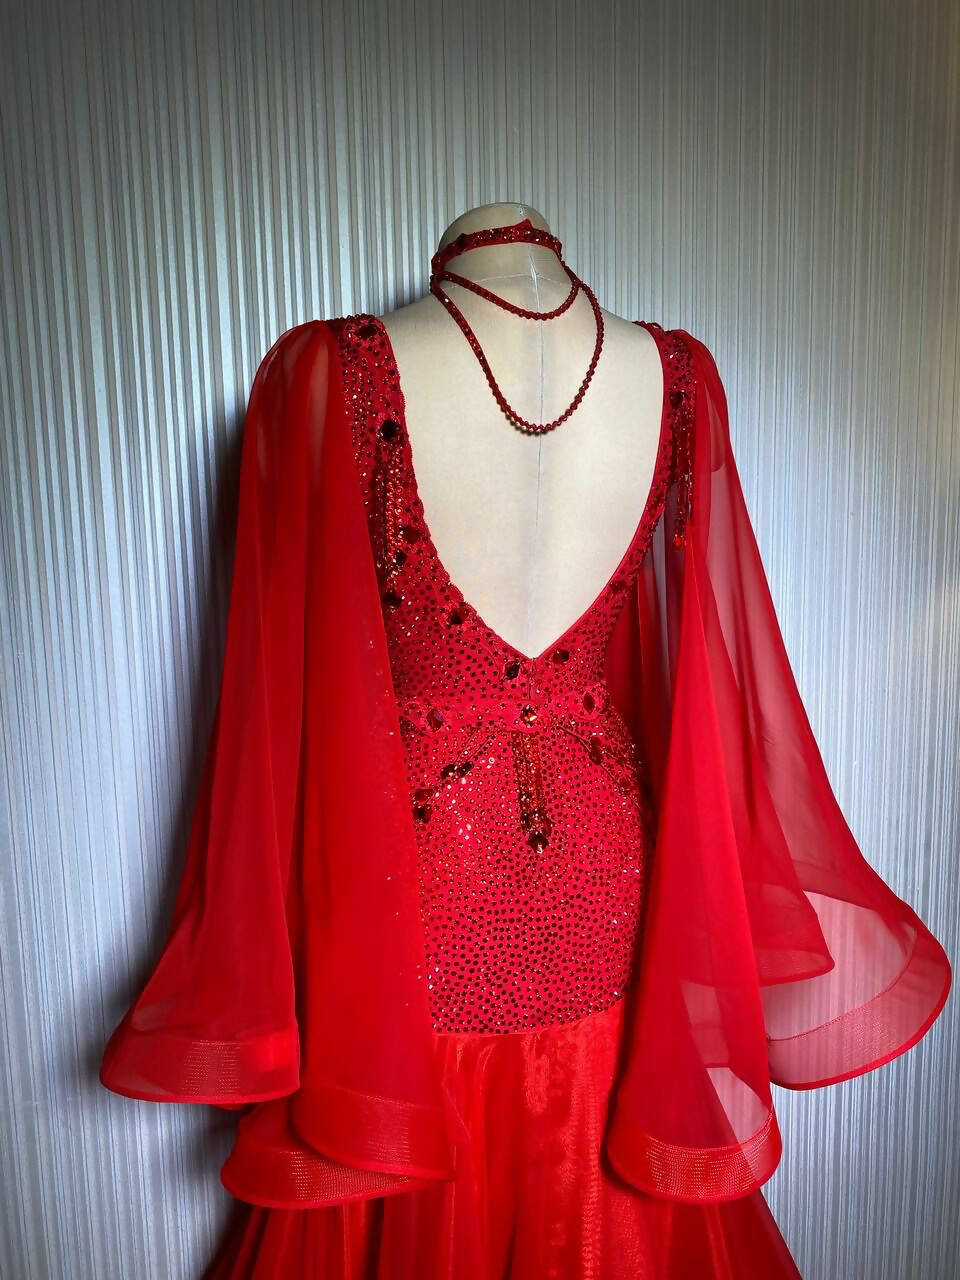 Never Worn Red Standard Dress (ballroom dress for sale, standard)